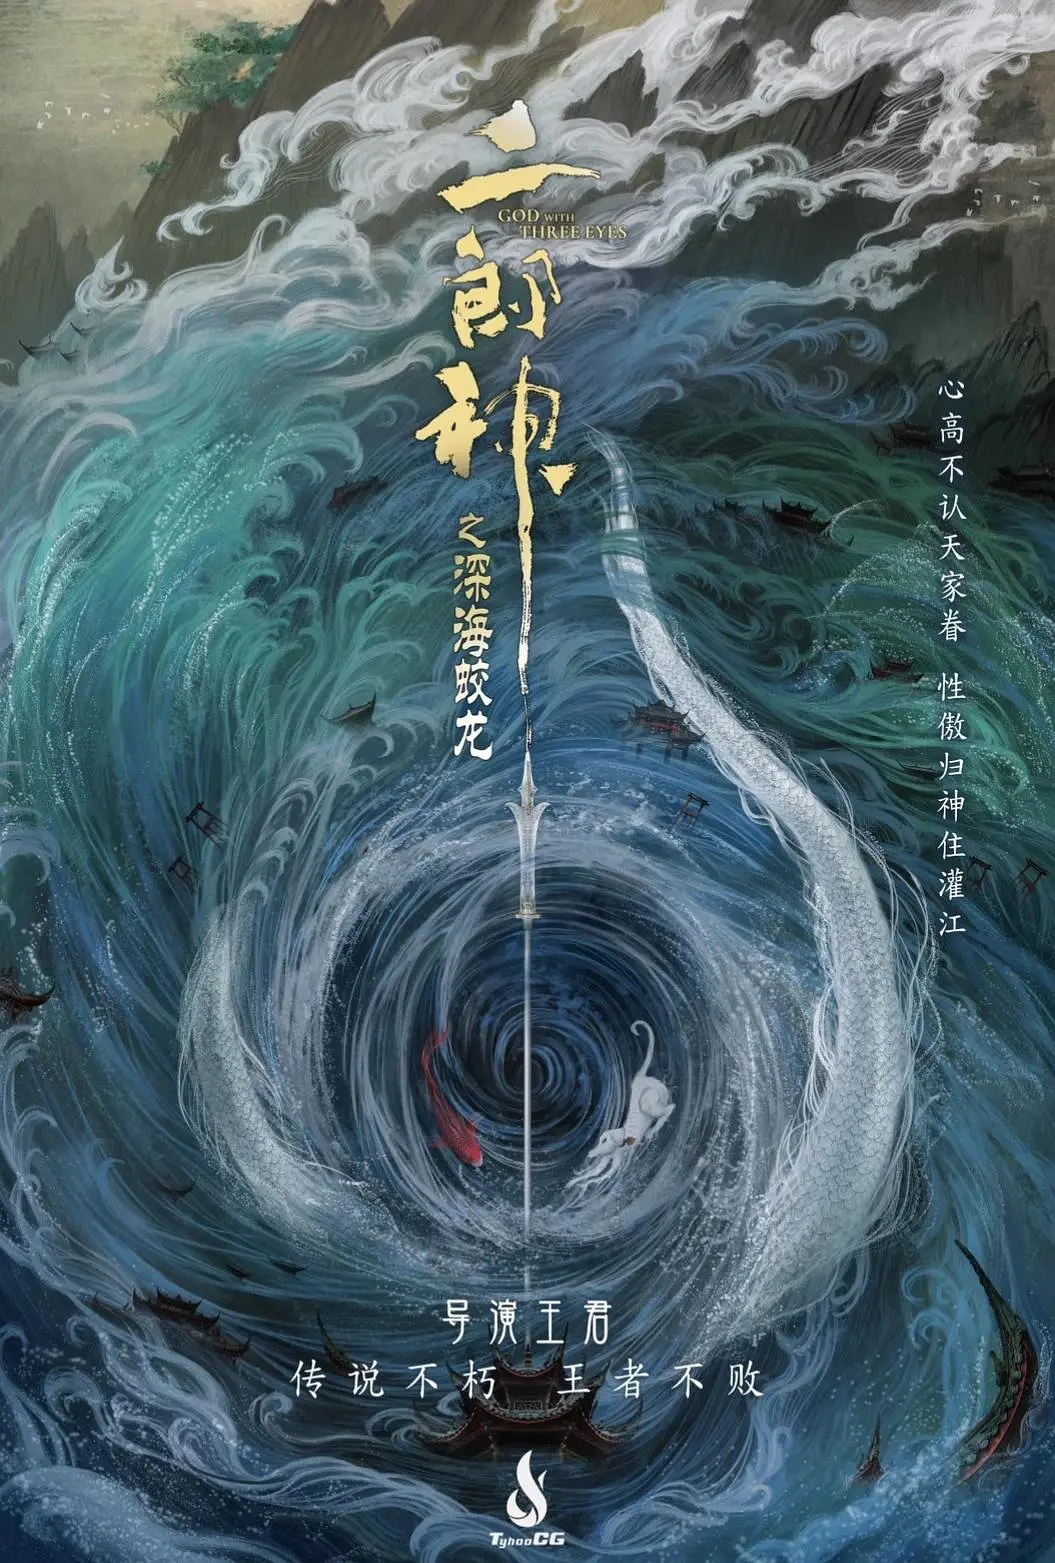 《二郎神之深海蛟龙》 曝先导预告 取消7.22公映